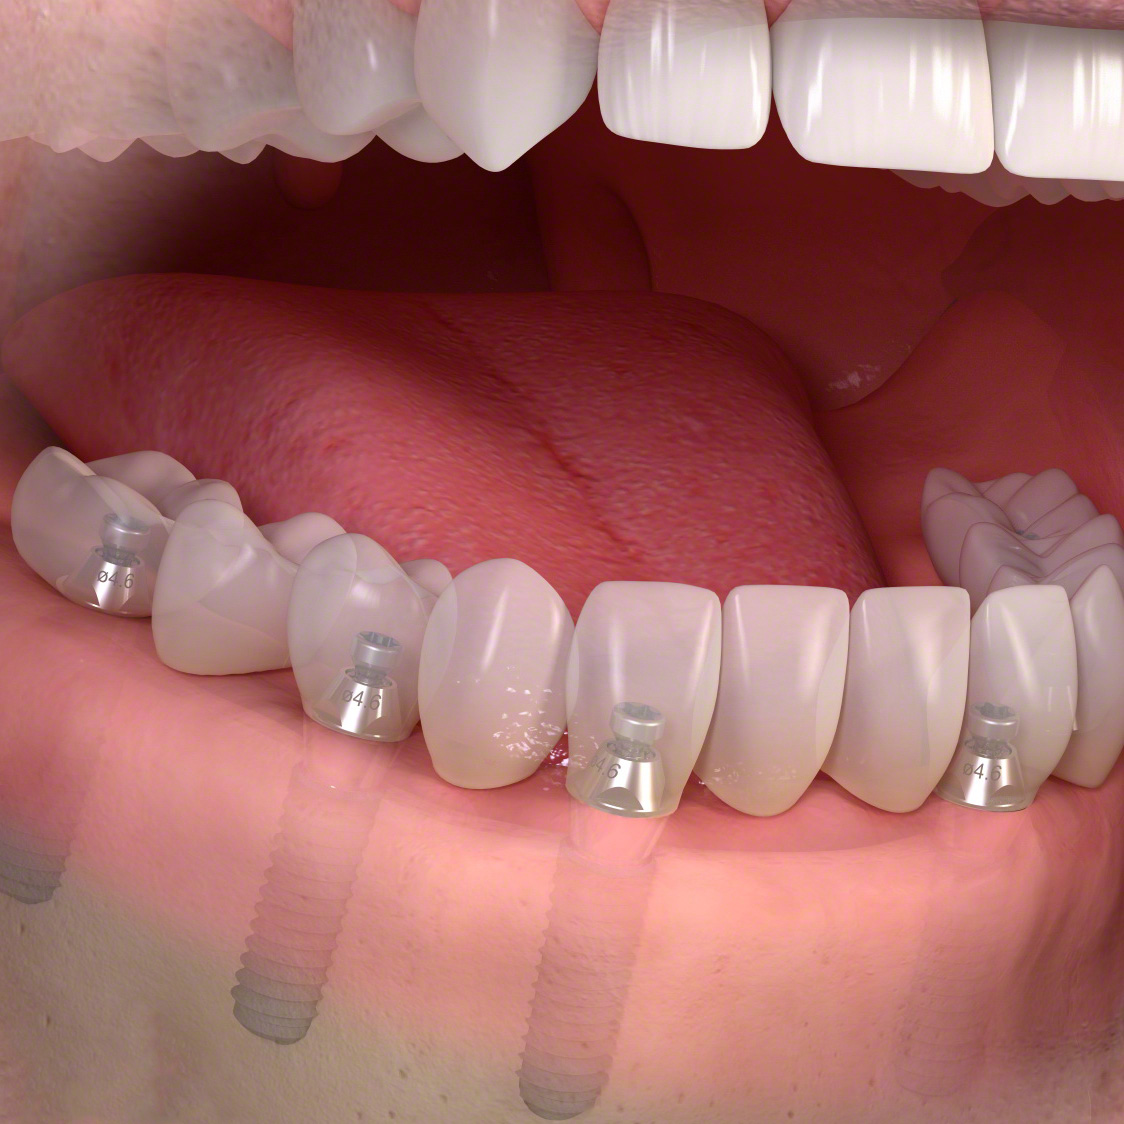 Ersatz aller Zähne mit einer auf mehreren Implantaten verankerten, nicht herausnehmbaren Brücke